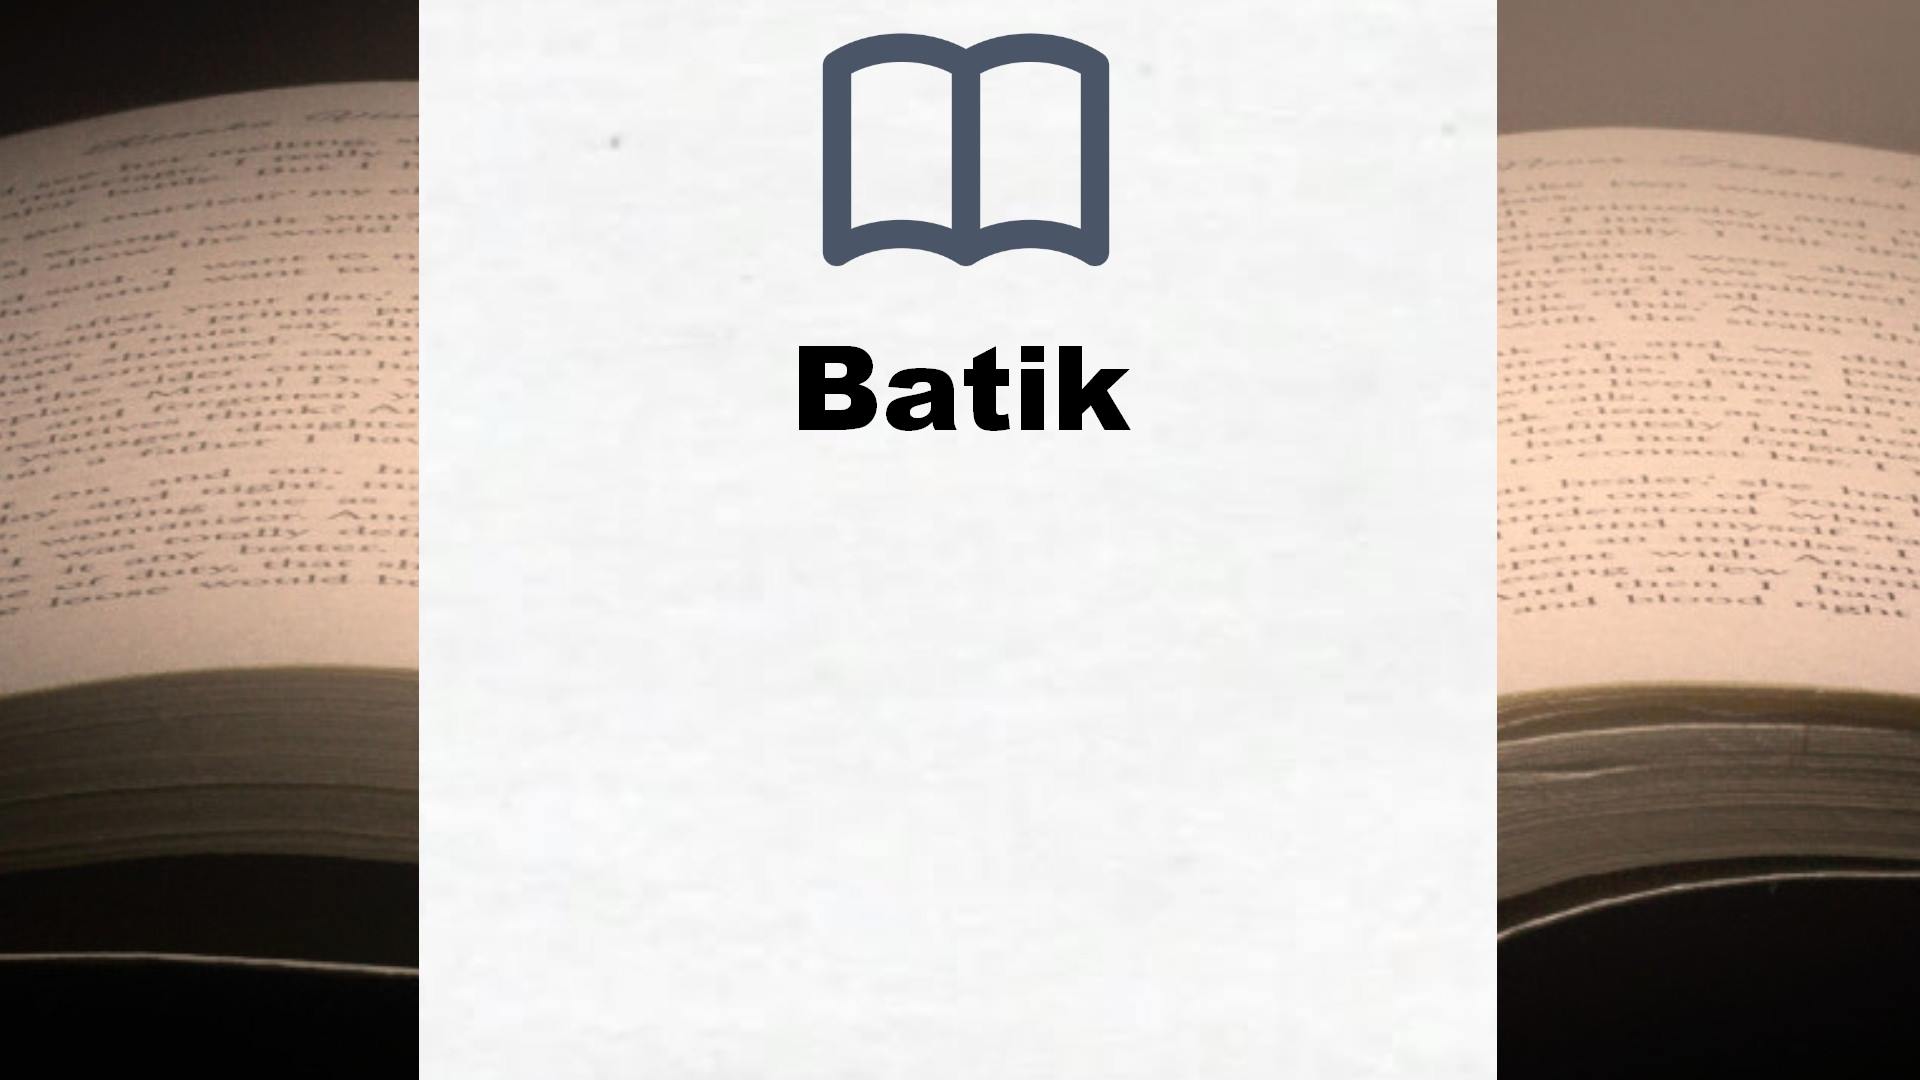 Bücher über Batik